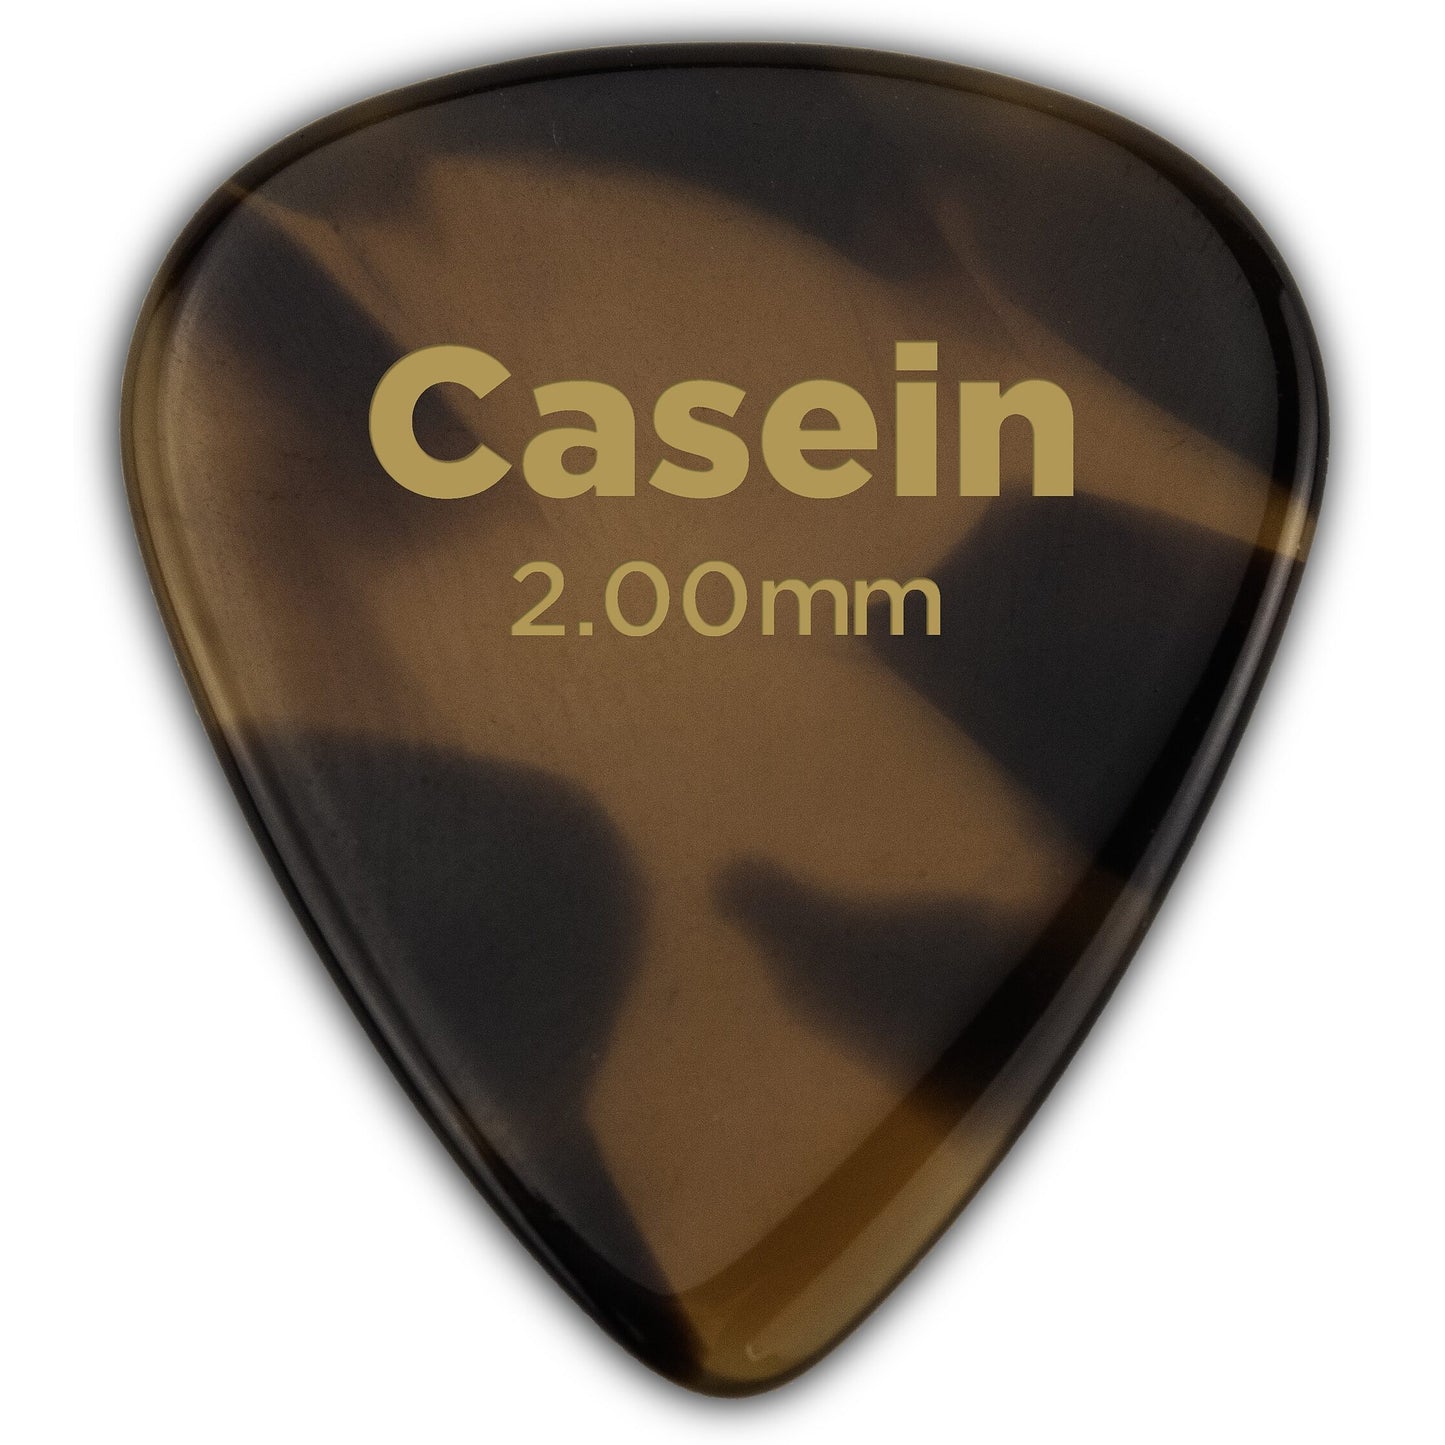 D'Addario Casein Standard Guitar Pick, 1CA7-01, 2.0mm